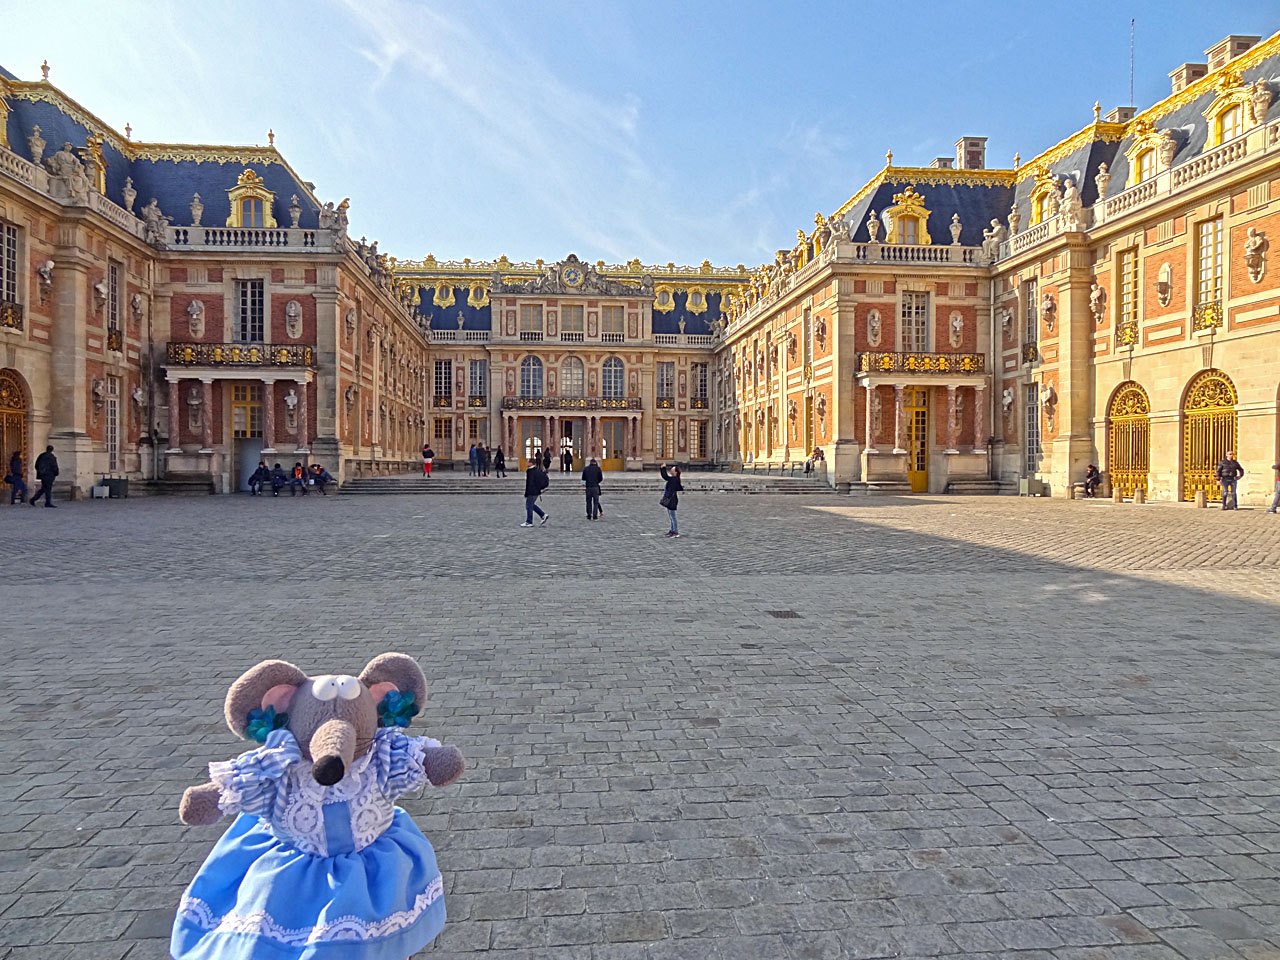 Miranda dans la cour royale du château de Versailles.